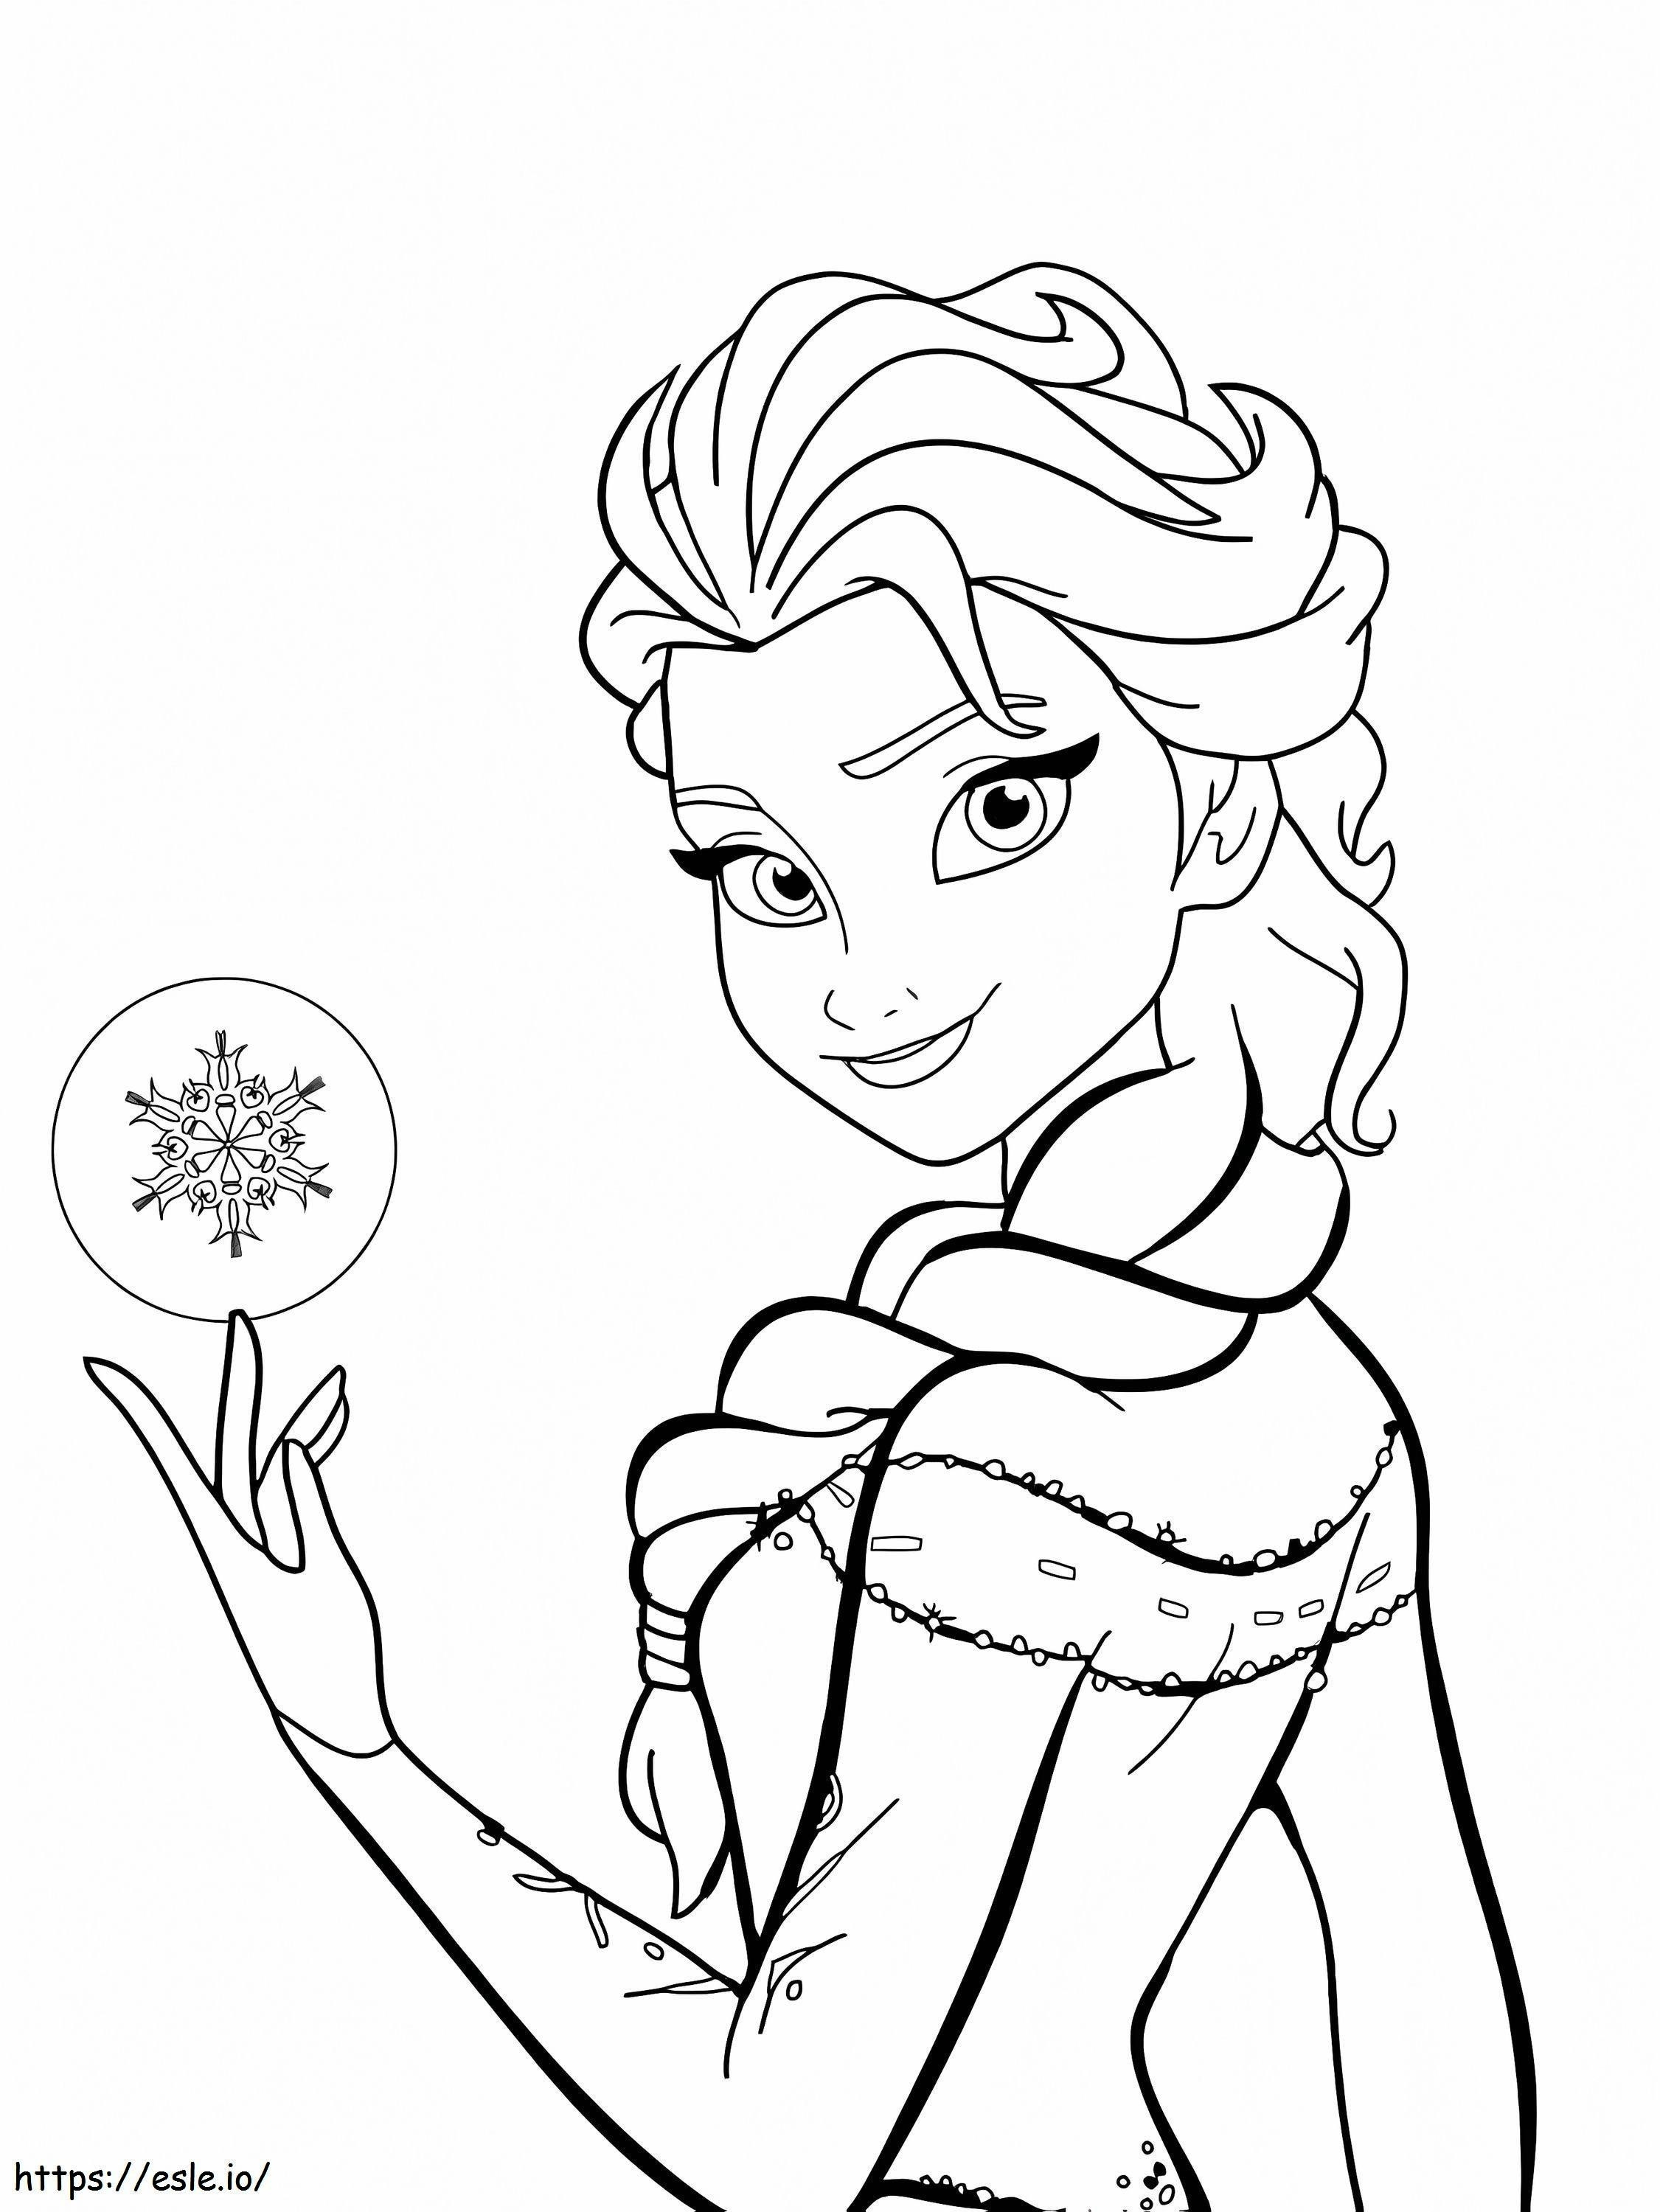 Schöne lächelnde Elsa ausmalbilder